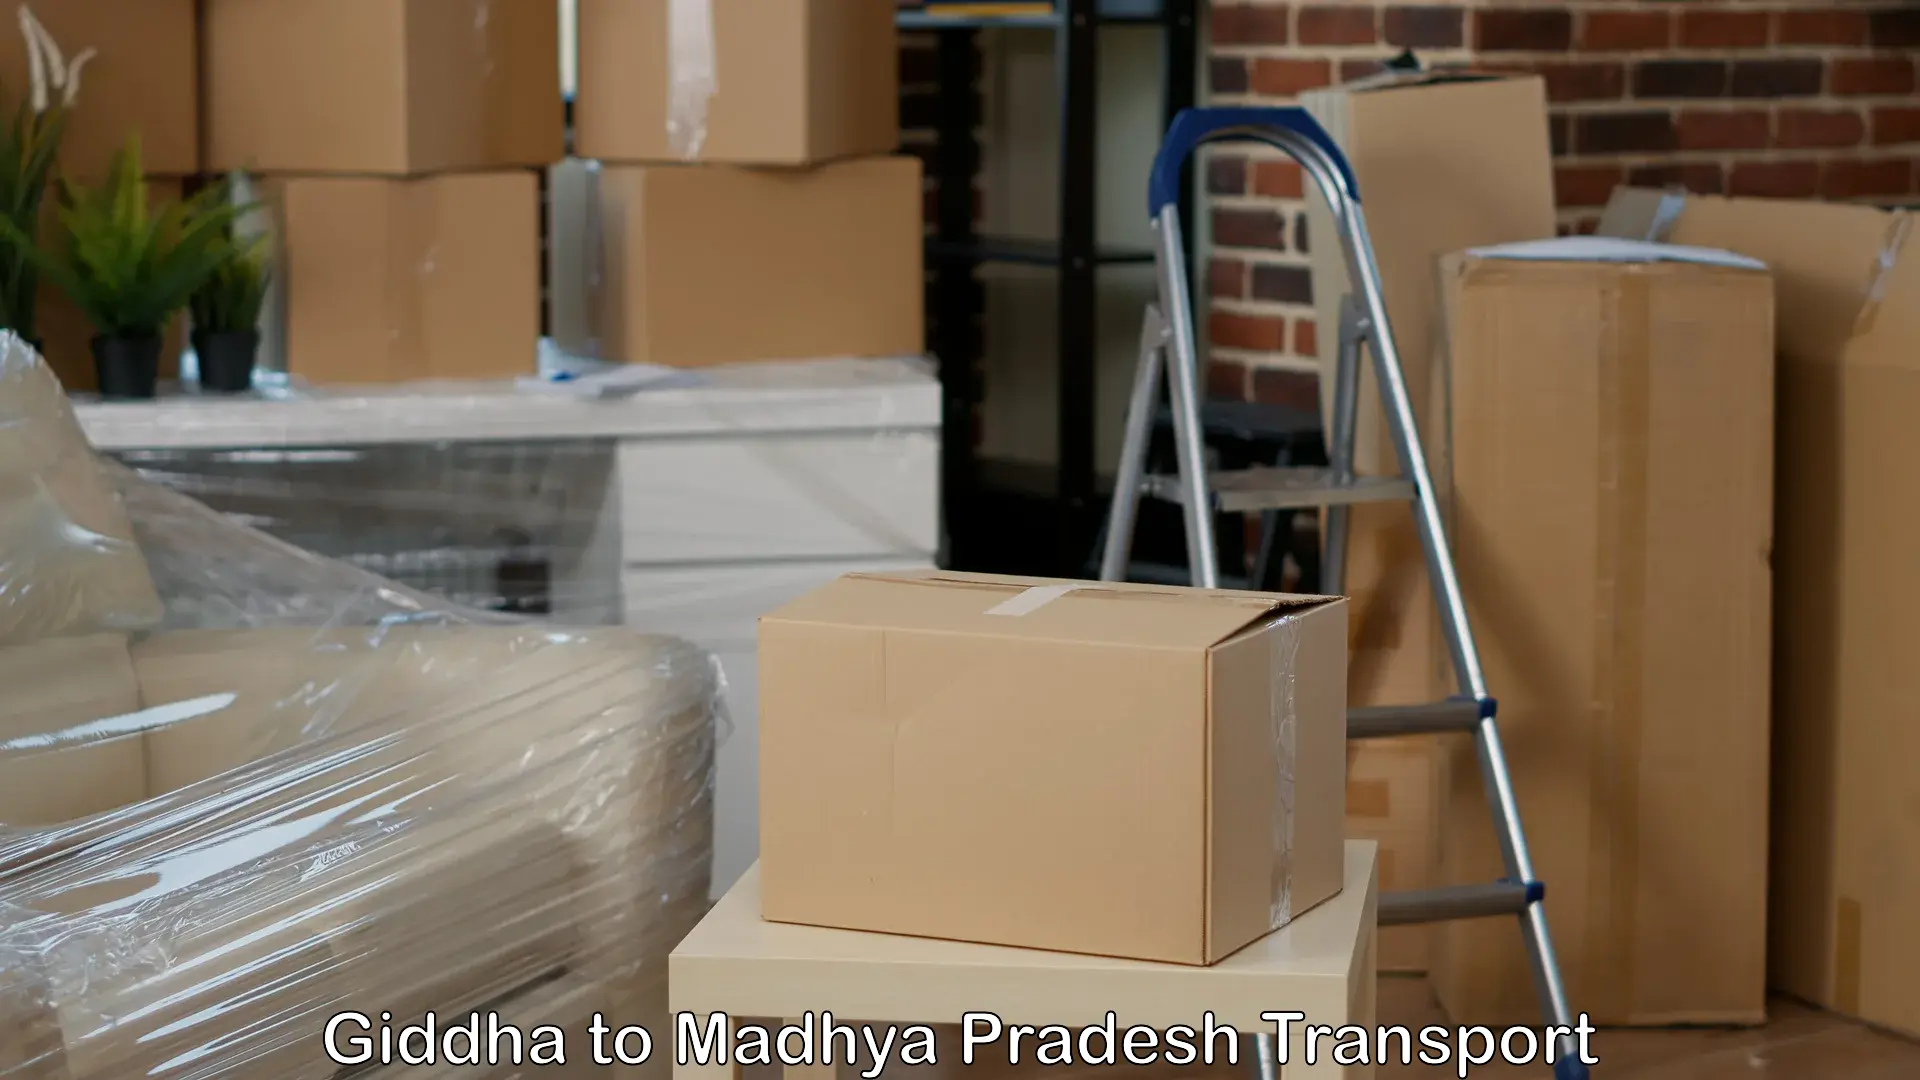 Shipping partner Giddha to Madhya Pradesh